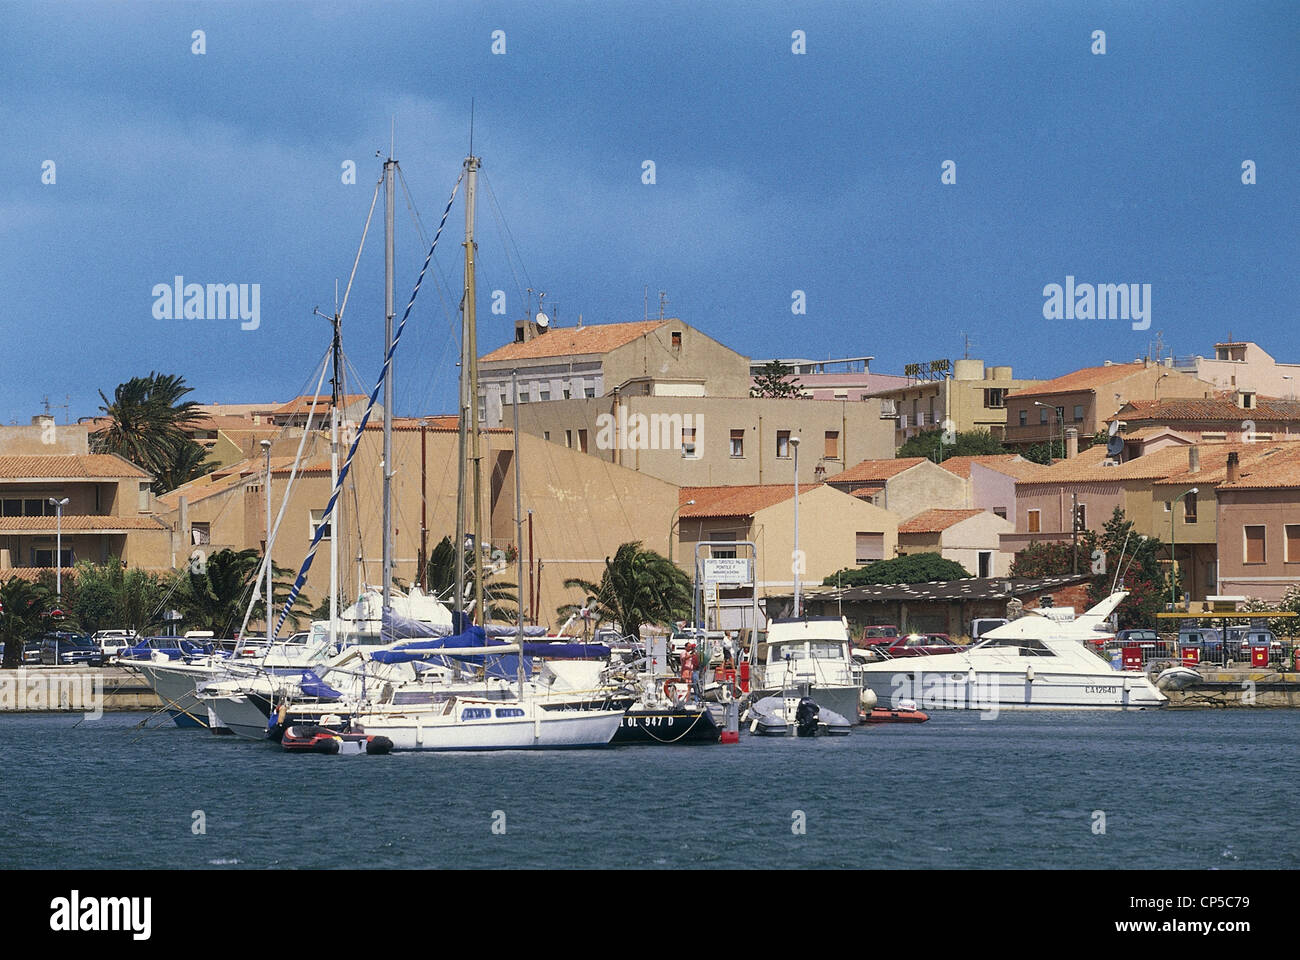 Sardinia - Palau (OT). Boats in the harbor. Stock Photo